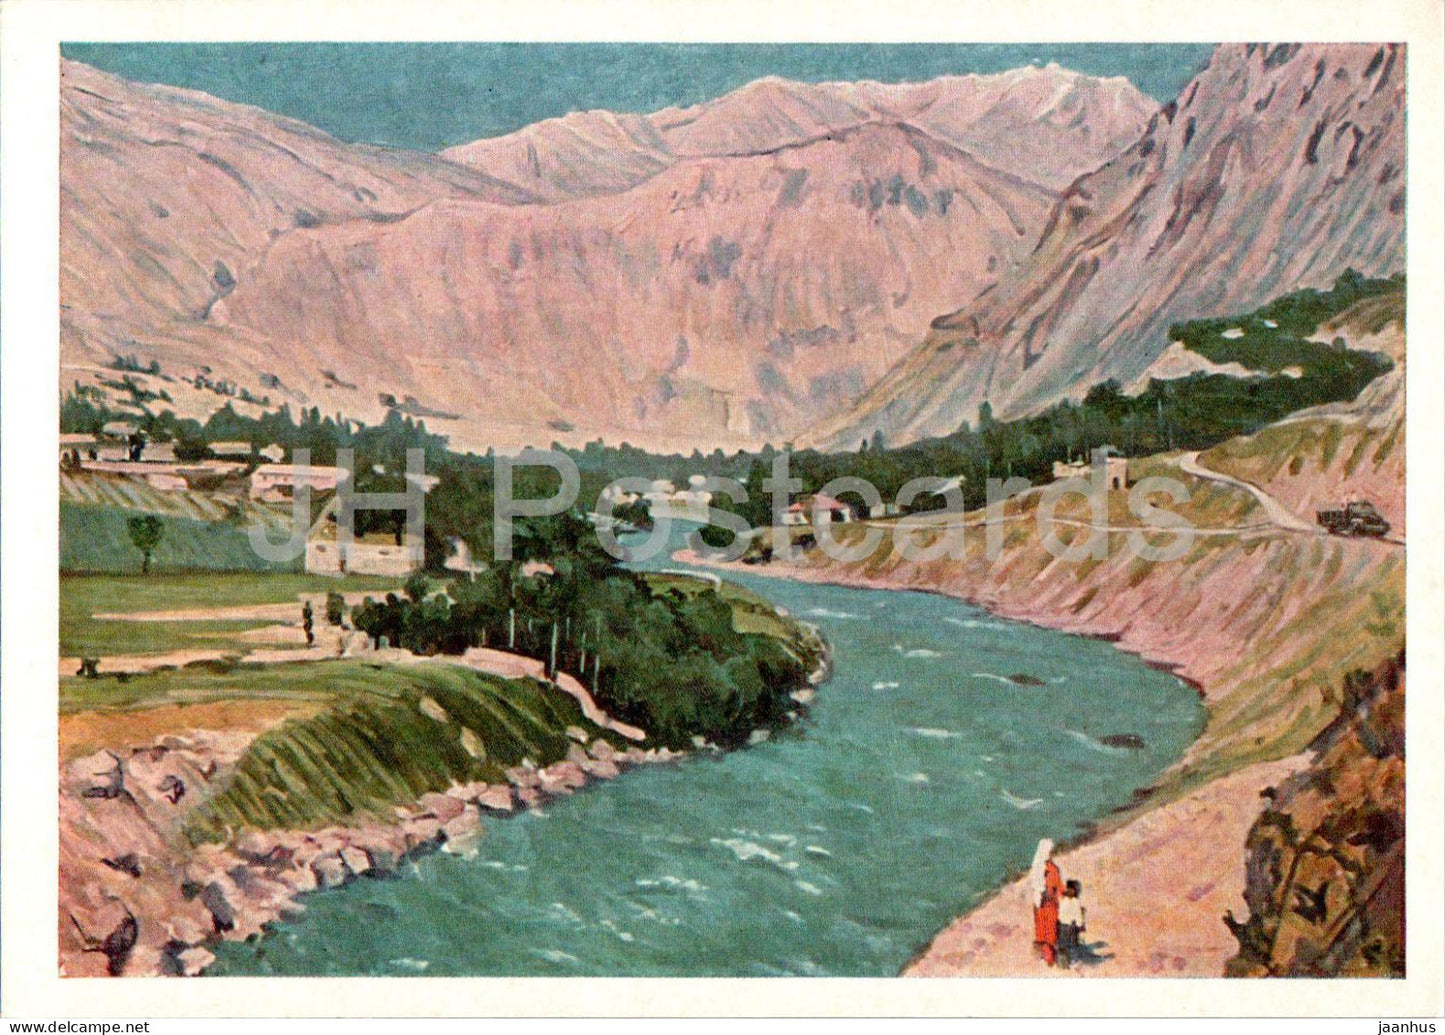 painting by Hushbaht Hushvahtov - Khorog - Tajik art - 1968 - Russia USSR - unused - JH Postcards